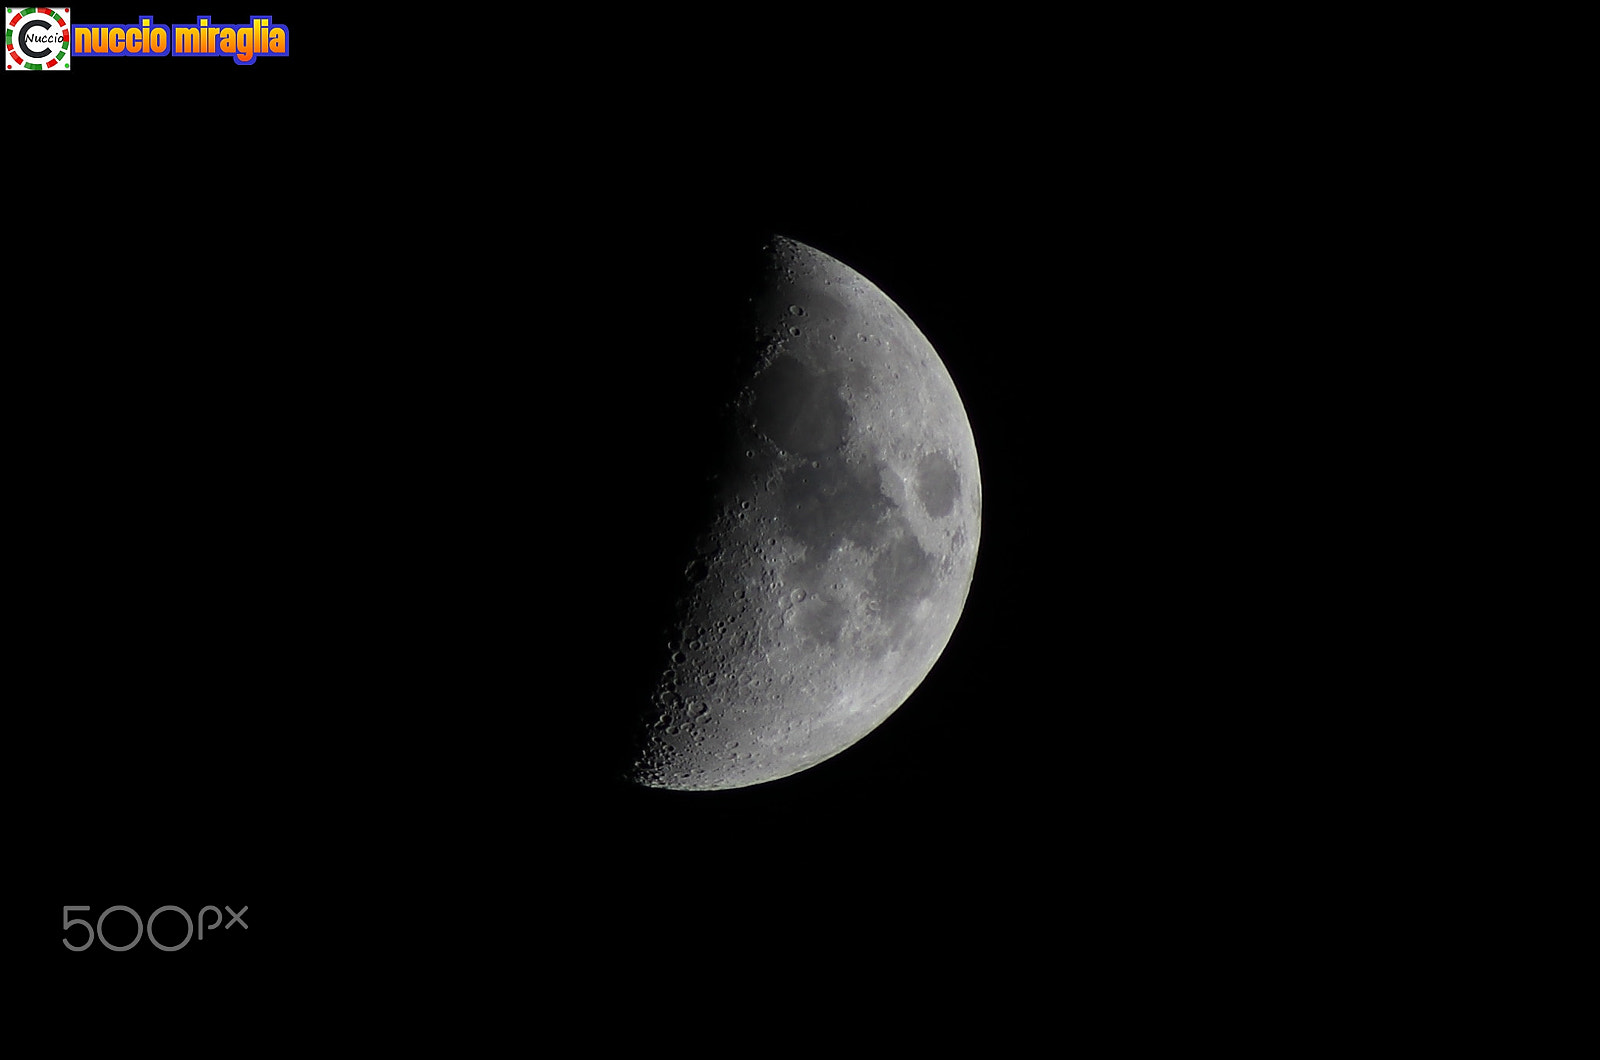 Canon EOS 80D sample photo. Moon photography